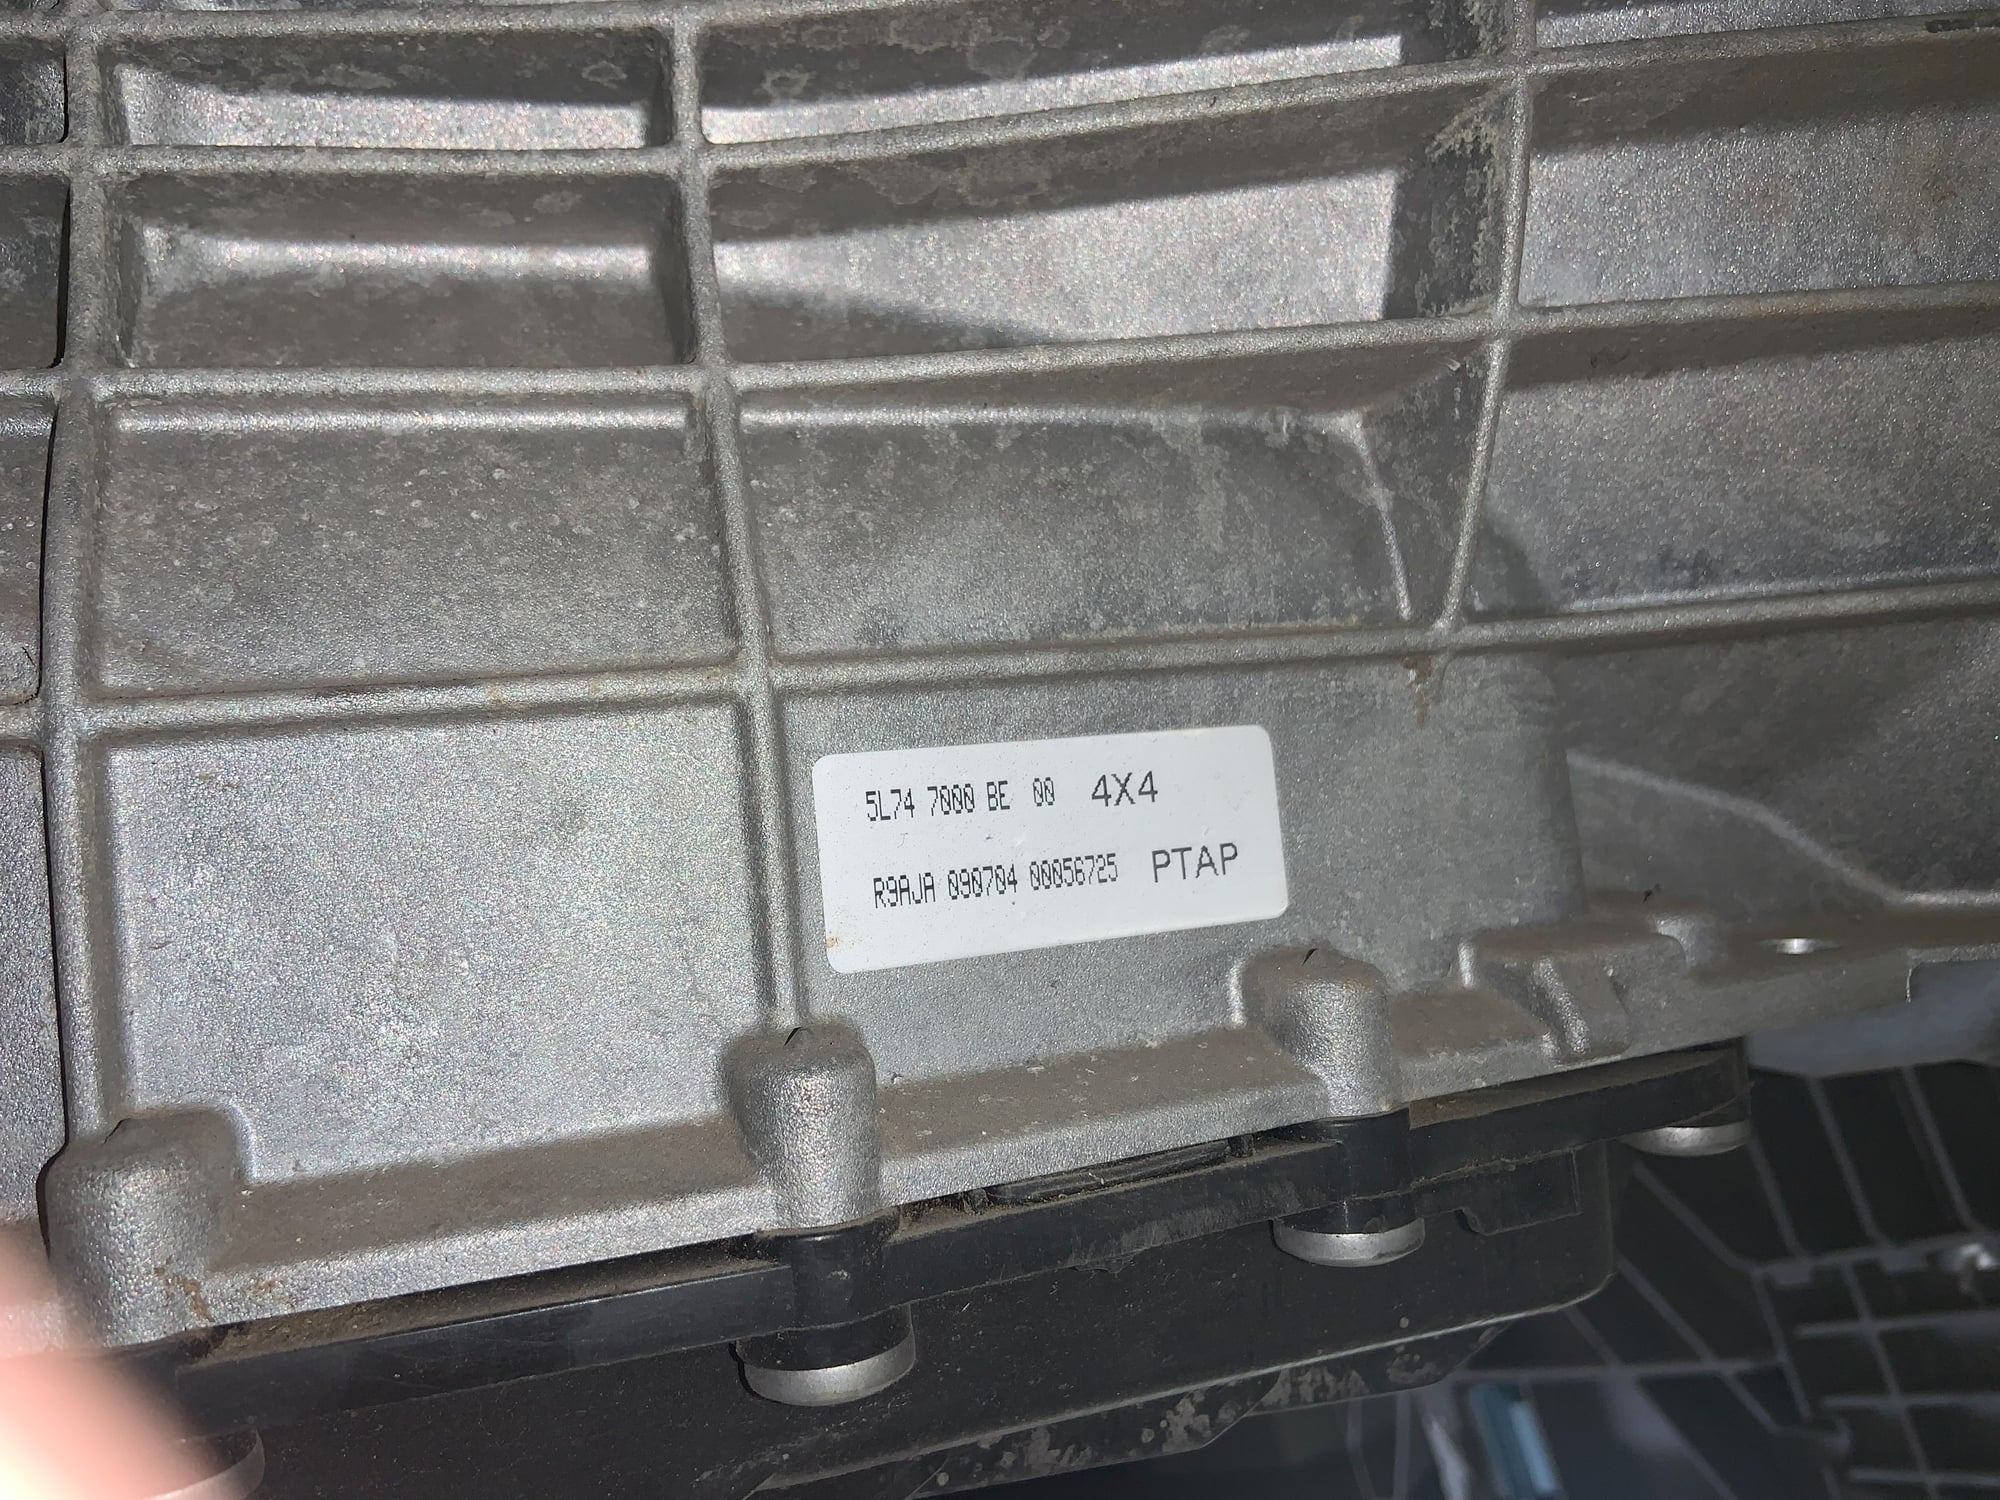 Drivetrain - Ford 5L74 4x4 Transmission - New - 0  All Models - Auburn Hills, MI 48341, United States